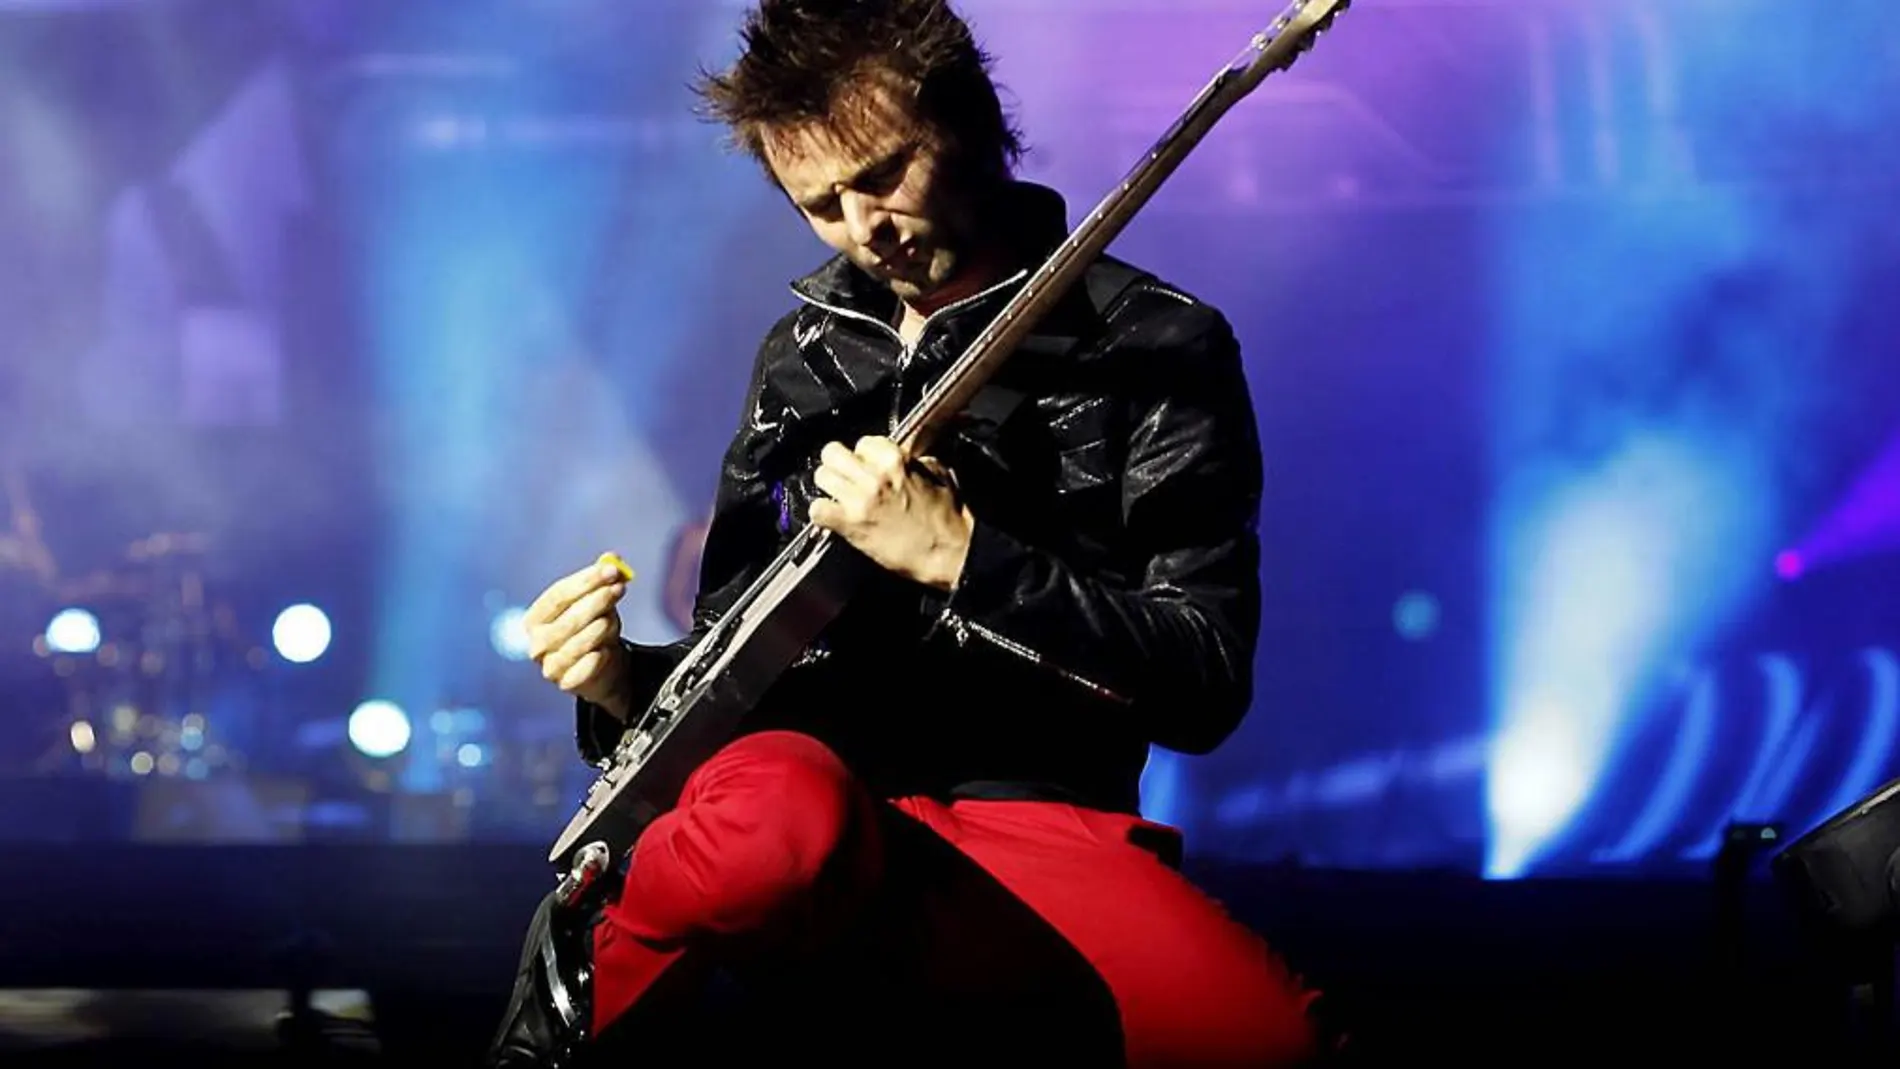 El británico Matt Bellamy, cantante, compositor, pianista y guitarrista de la banda de rock "Muse", durante el concierto que ofrecen, esta noche, en el estadio Olímpico de Barcelona, único concierto en España en el que presentan su último disco "The 2nd Law".